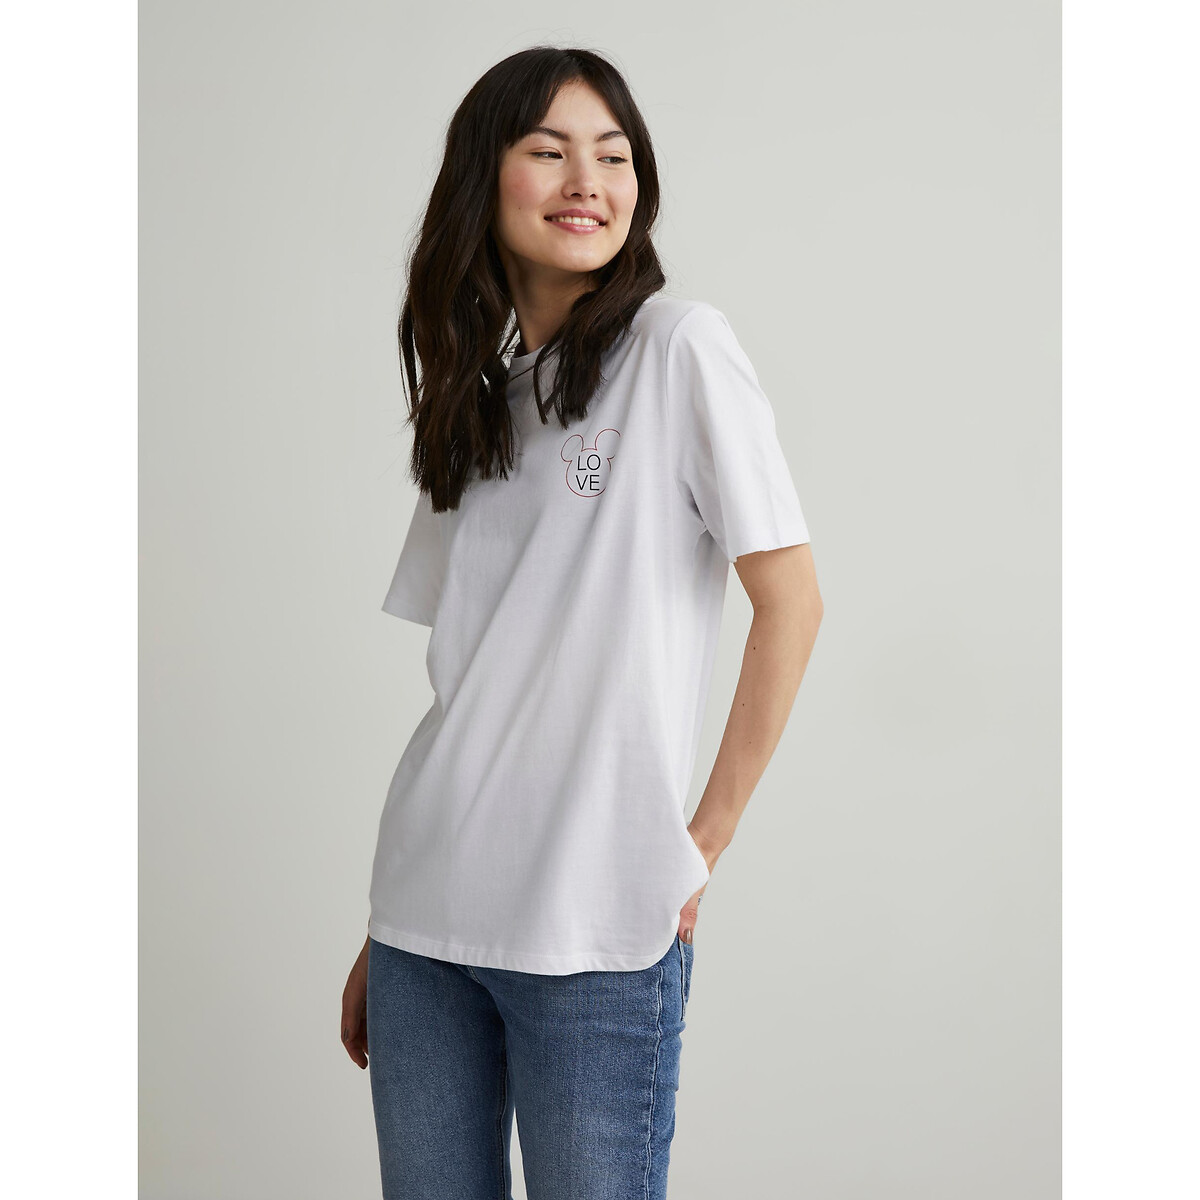 By Alina Damentop T-Shirt Rückenfrei Wasserfall-Ausschnitt Kurzshirt Weiß XS-M 